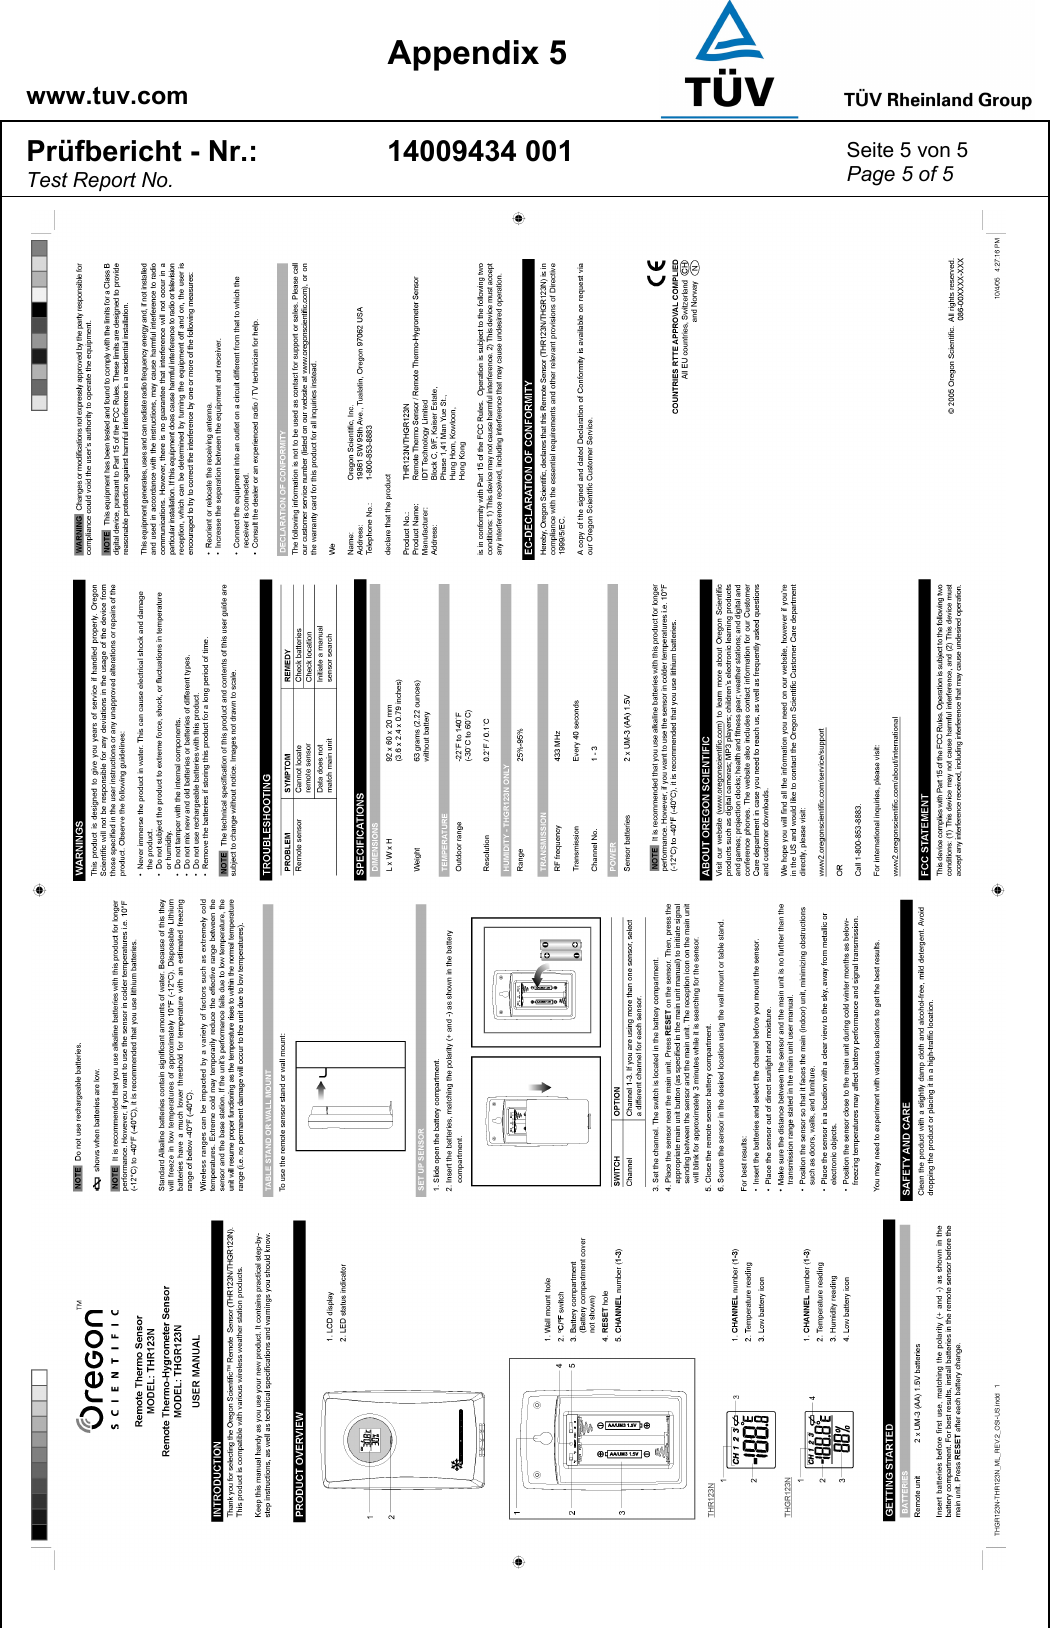    www.tuv.com  Appendix 5 Prüfbericht - Nr.: Test Report No. 14009434 001  Seite 5 von 5 Page 5 of 5     